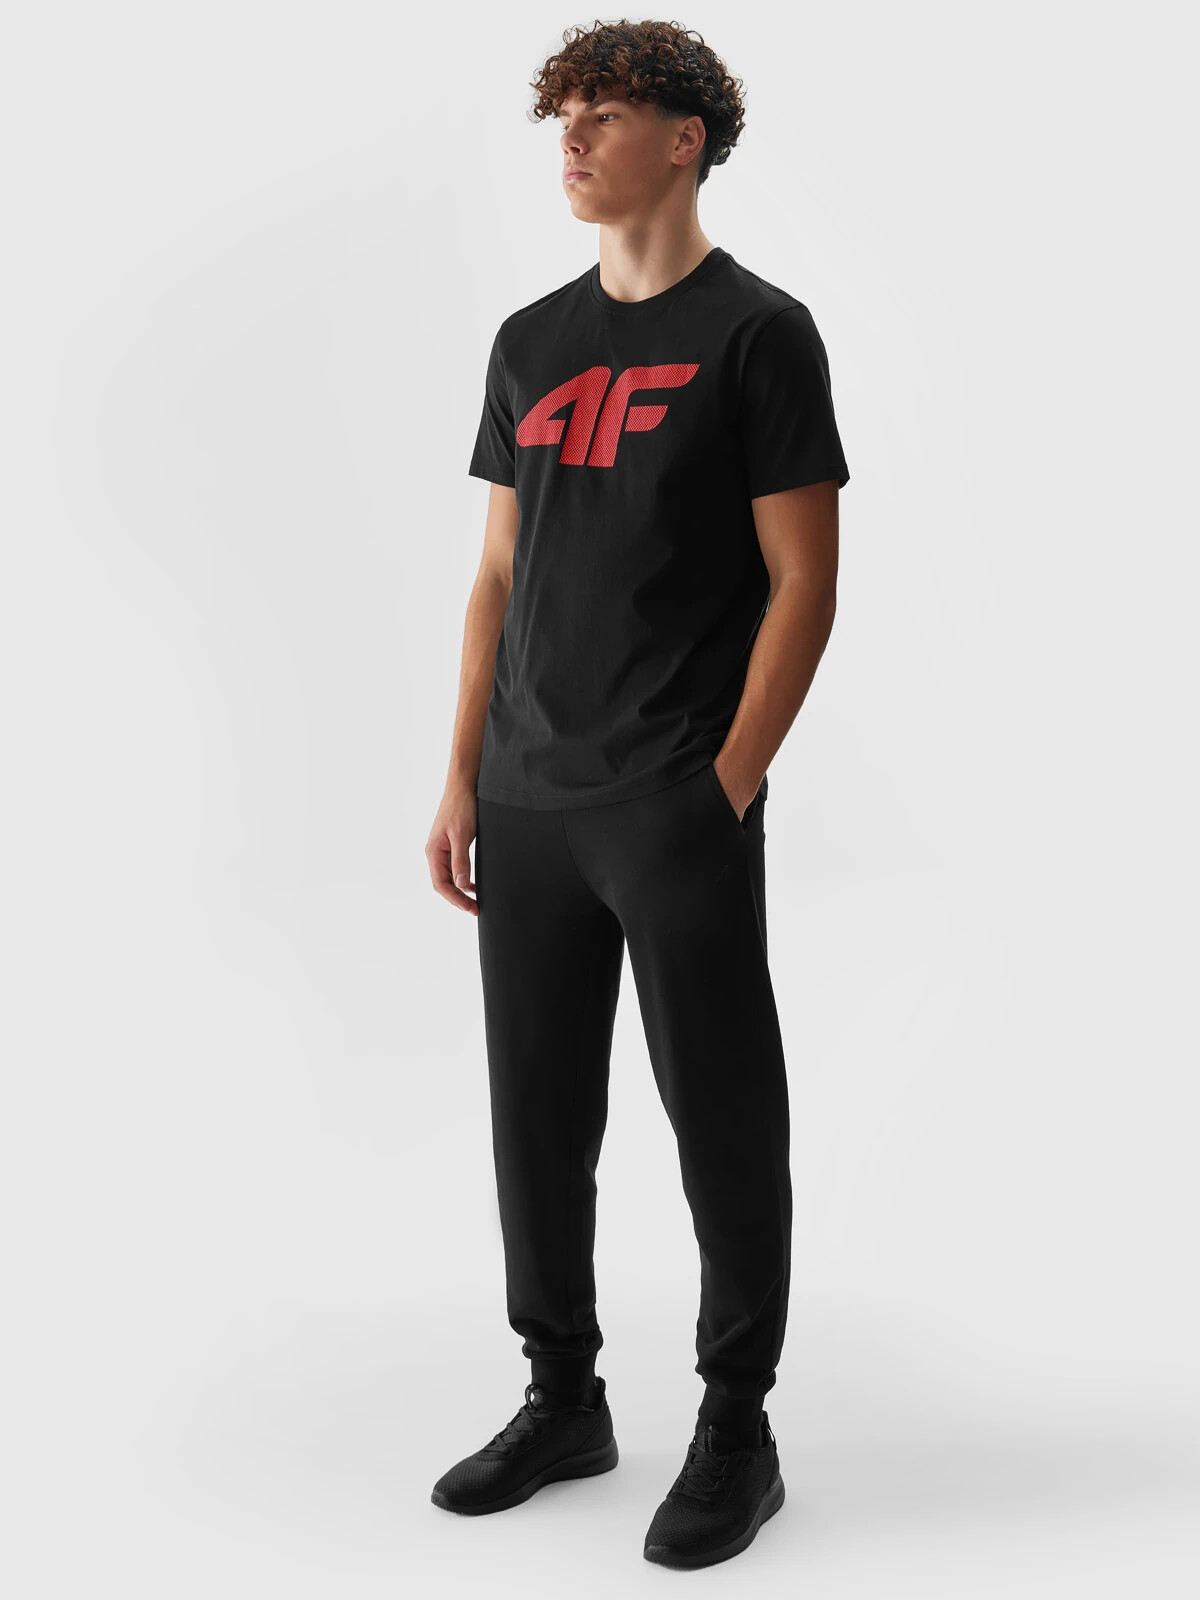 Men's 4F Jogger Sweatpants - Black